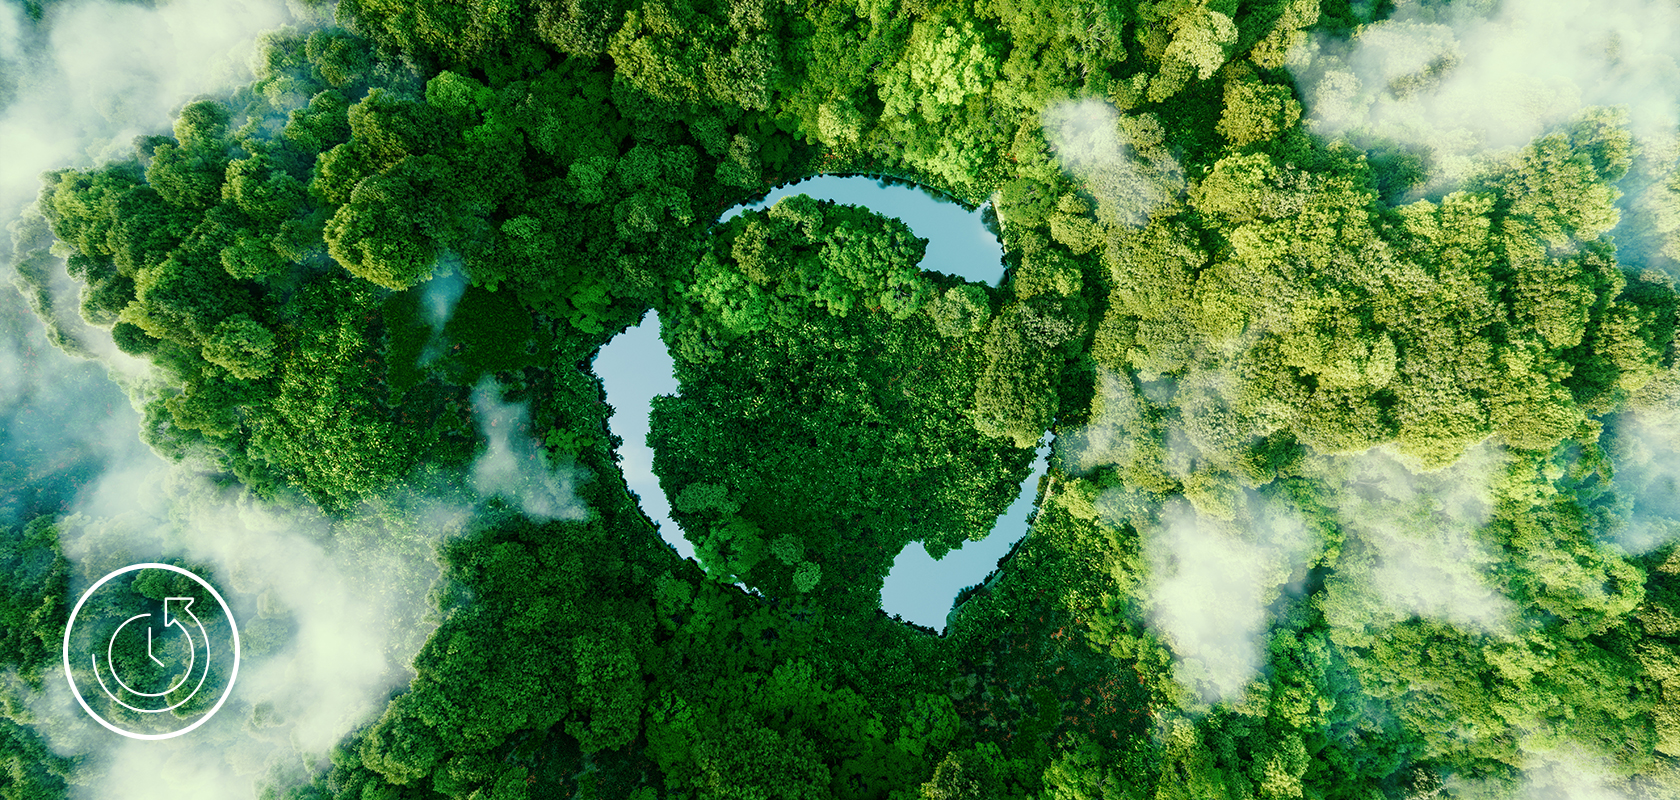 Una vista aérea de un exuberante bosque con un llamativo claro circular, simbolizando una iniciativa ecológica o el poder de la naturaleza.